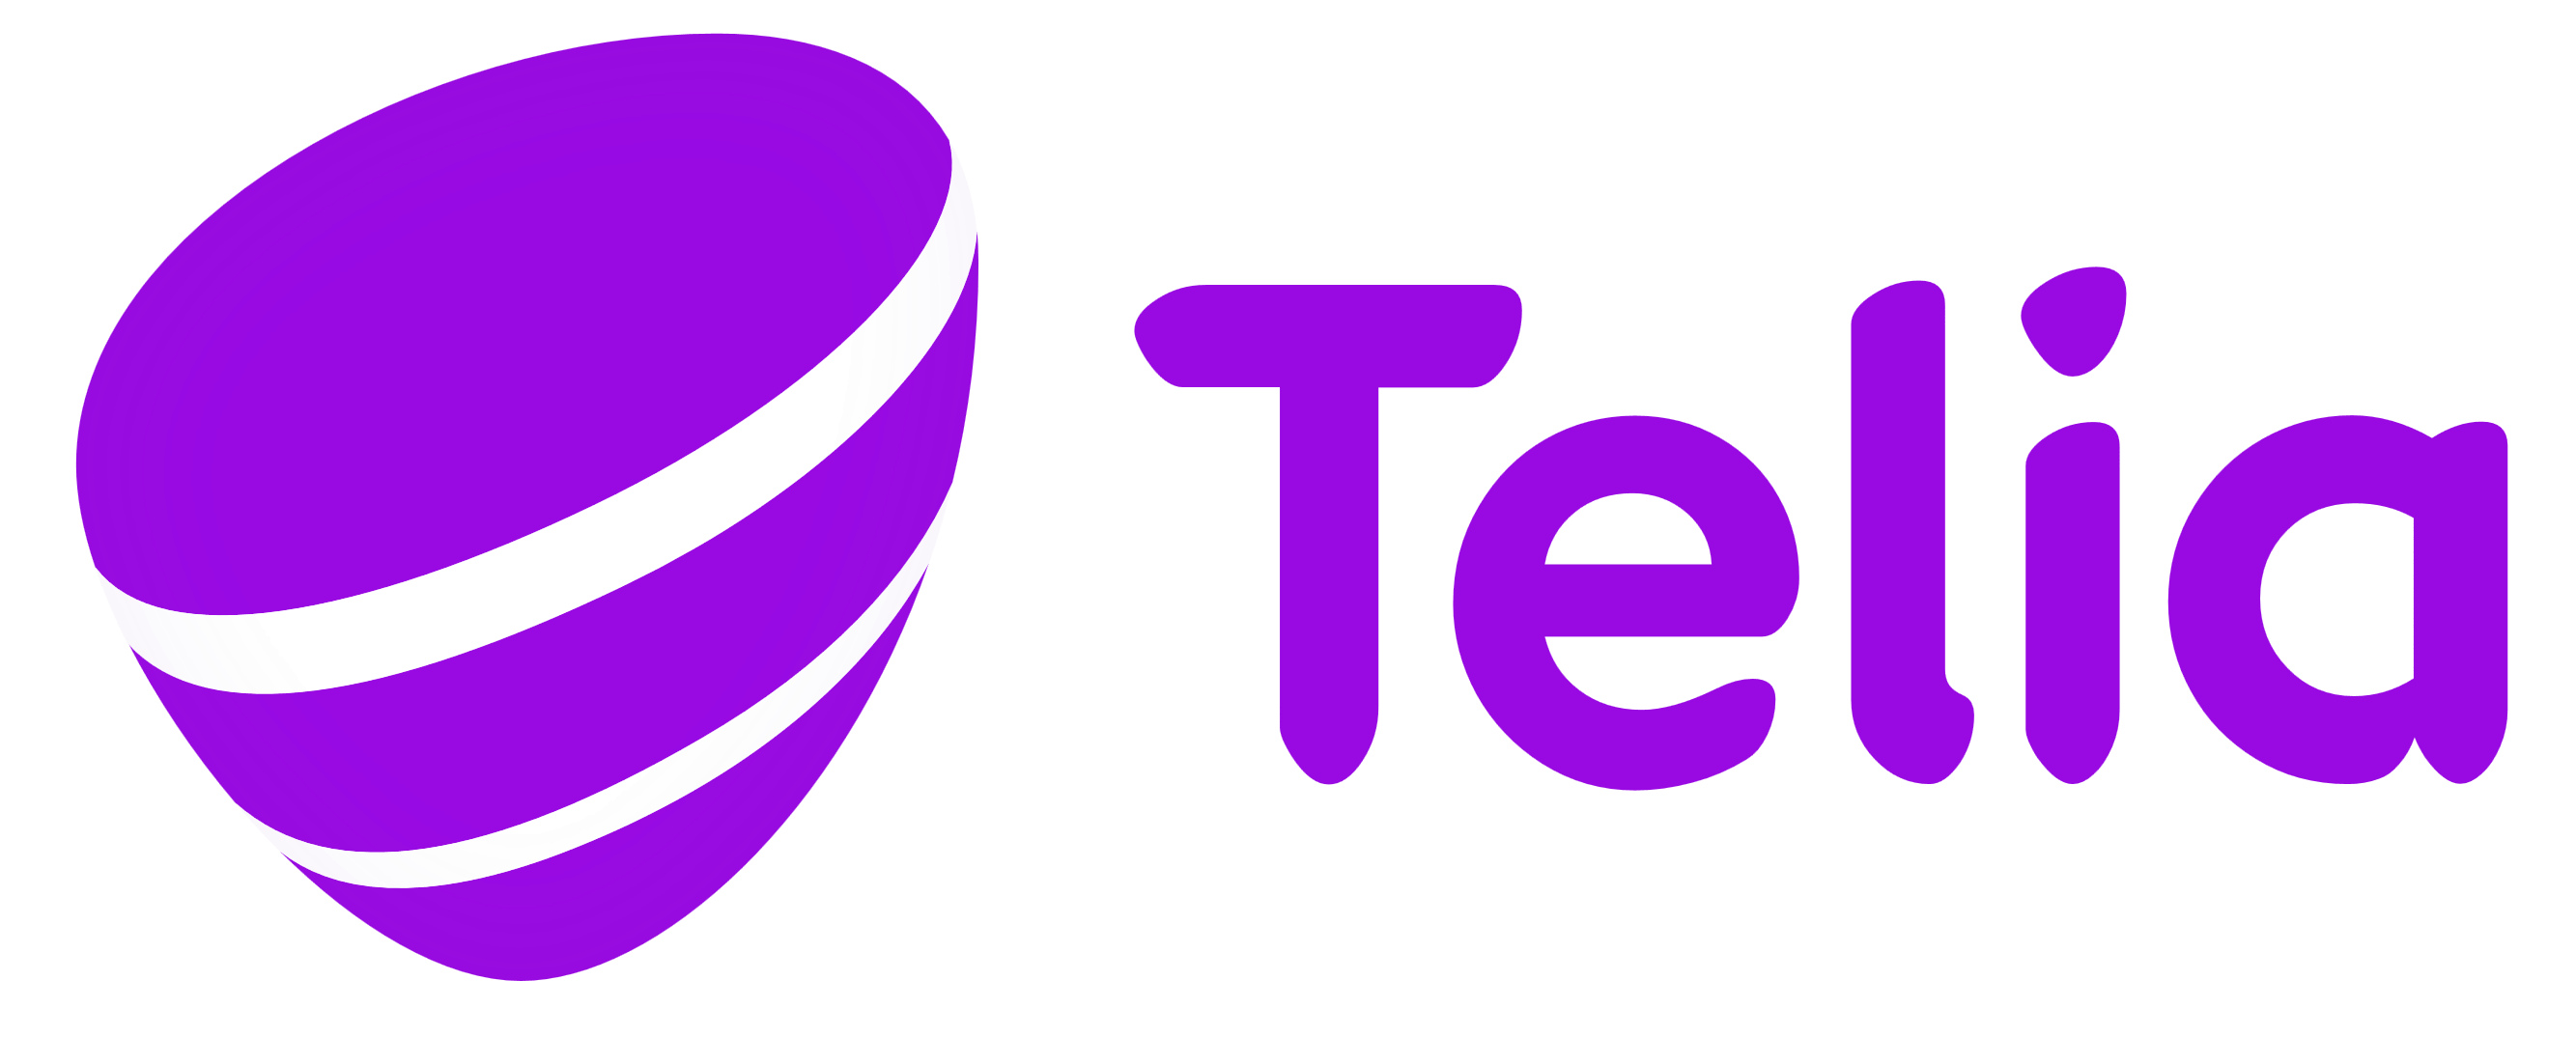 Telia_logo